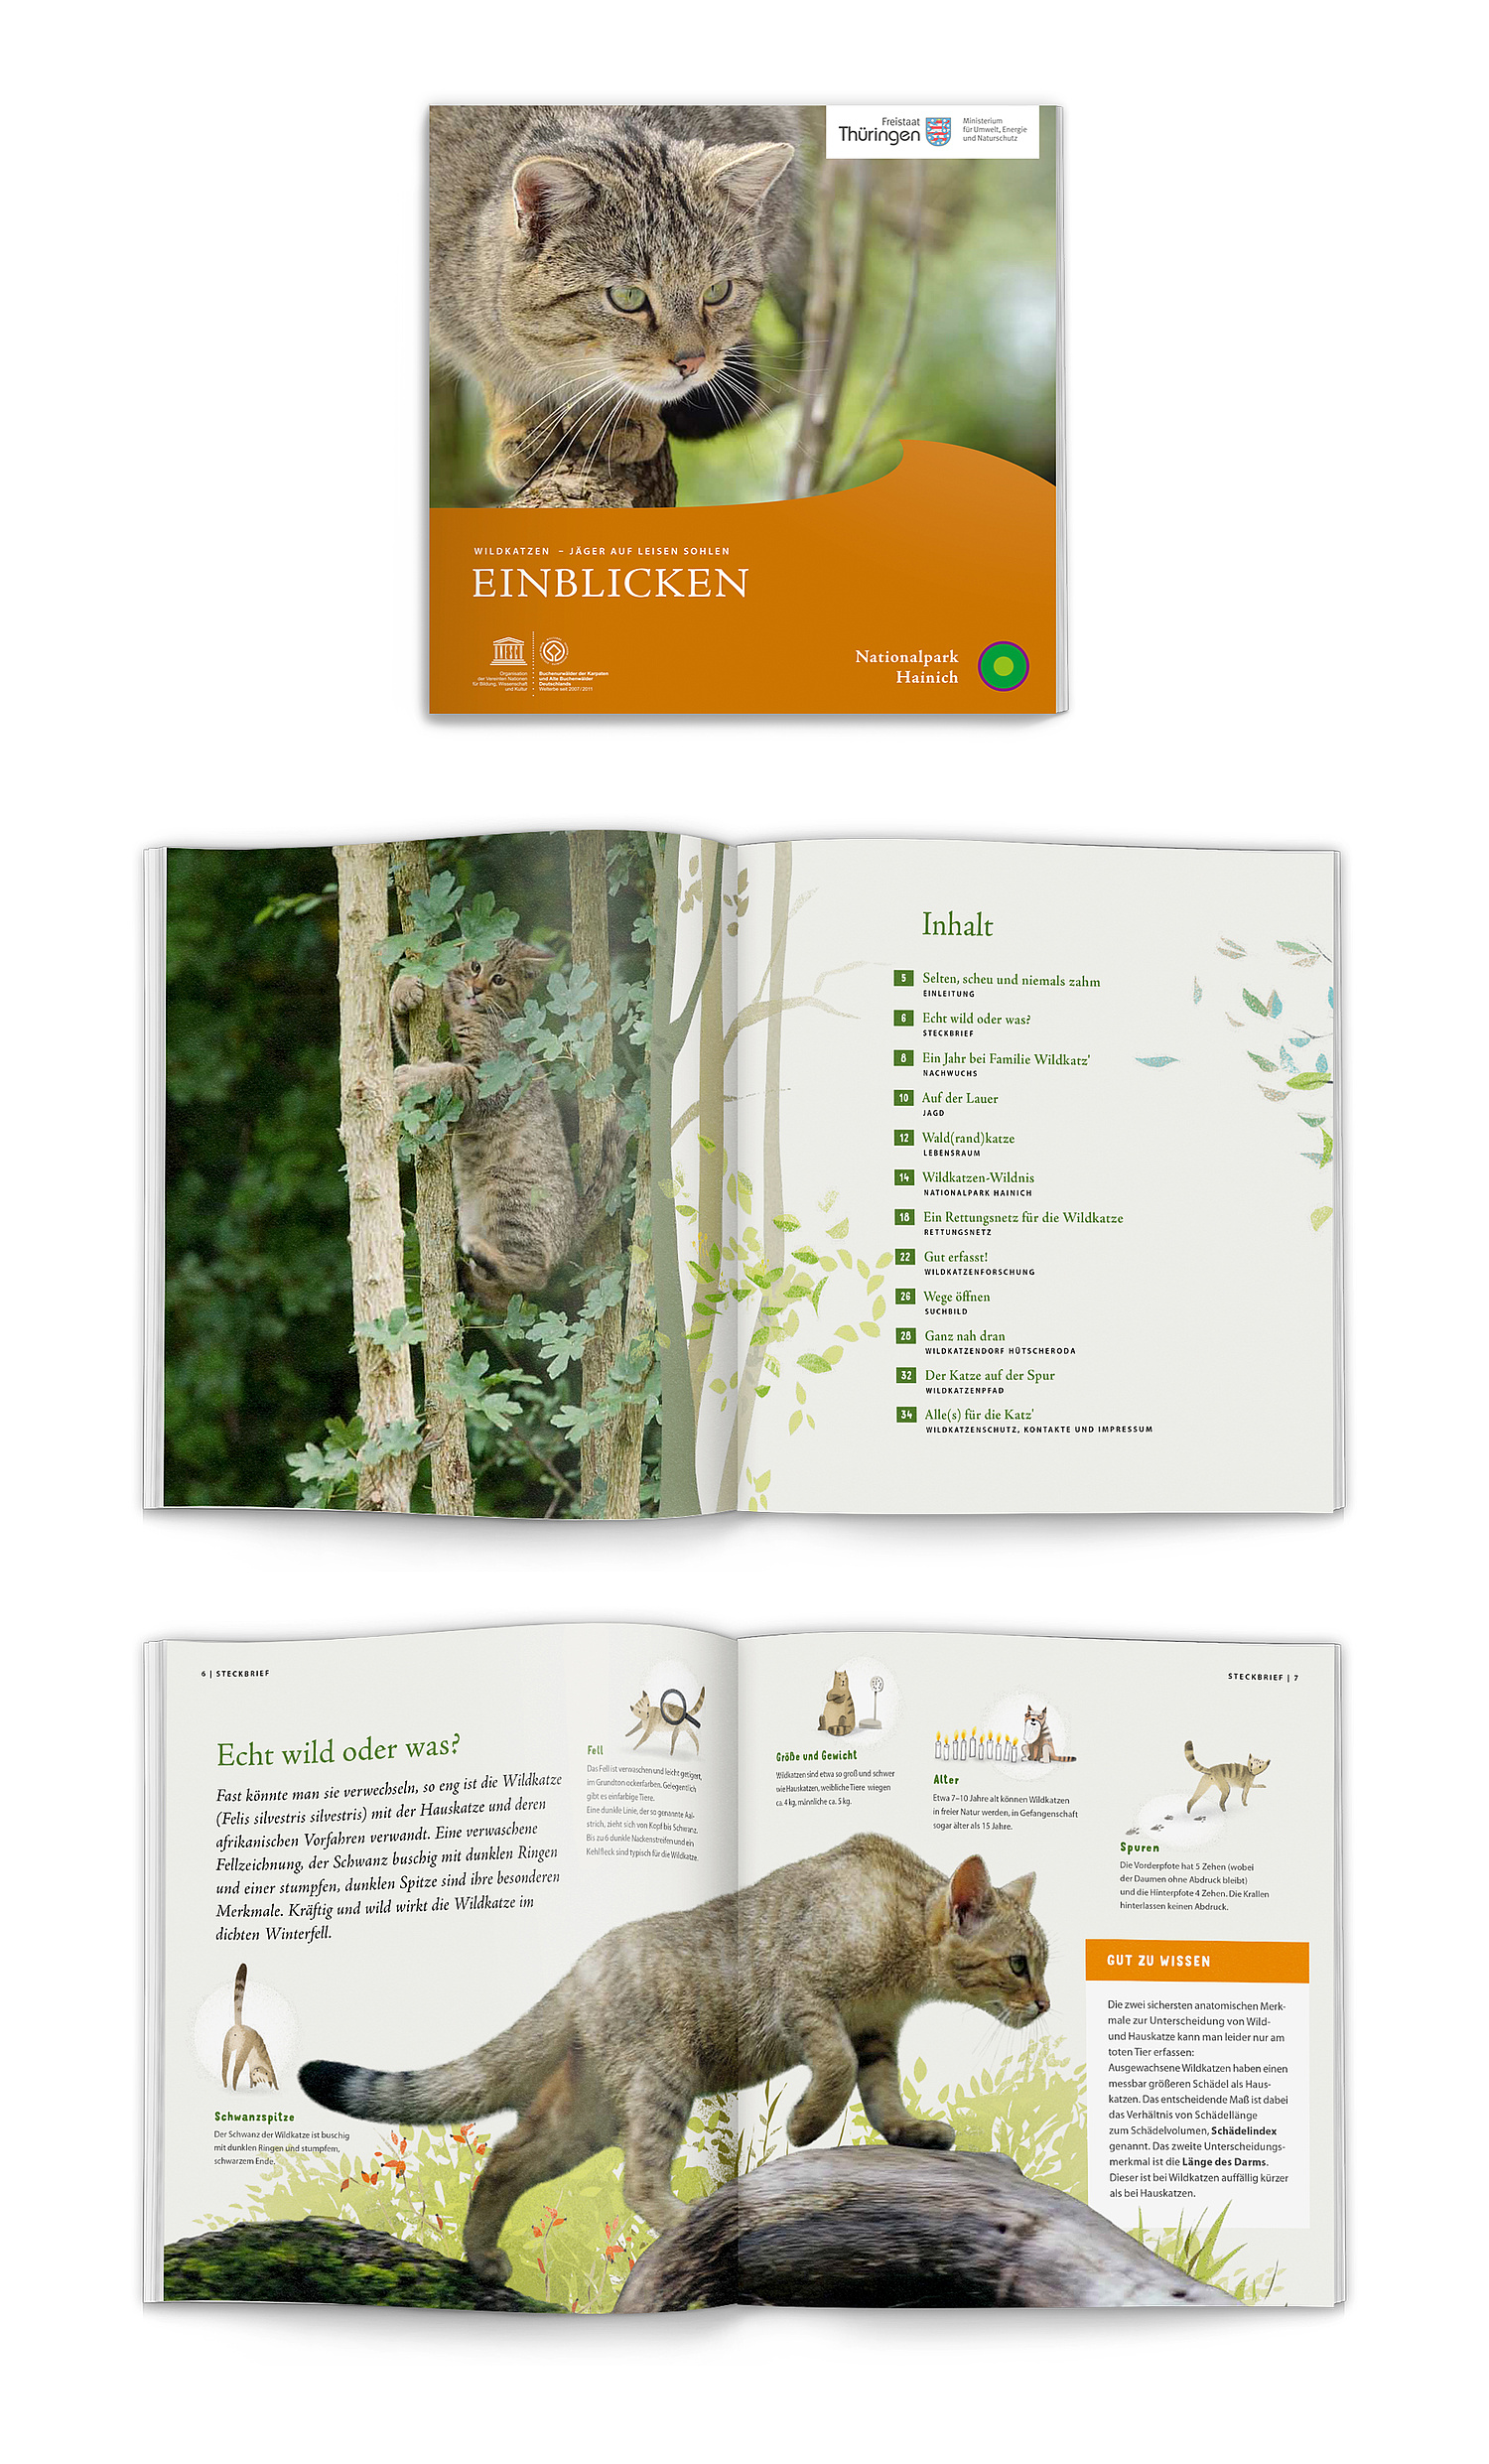 Das Bild zeigt den Titel und zwei Innenseiten aus der Wildkatzenbroschüre. (© Papenfuss | Atelier)